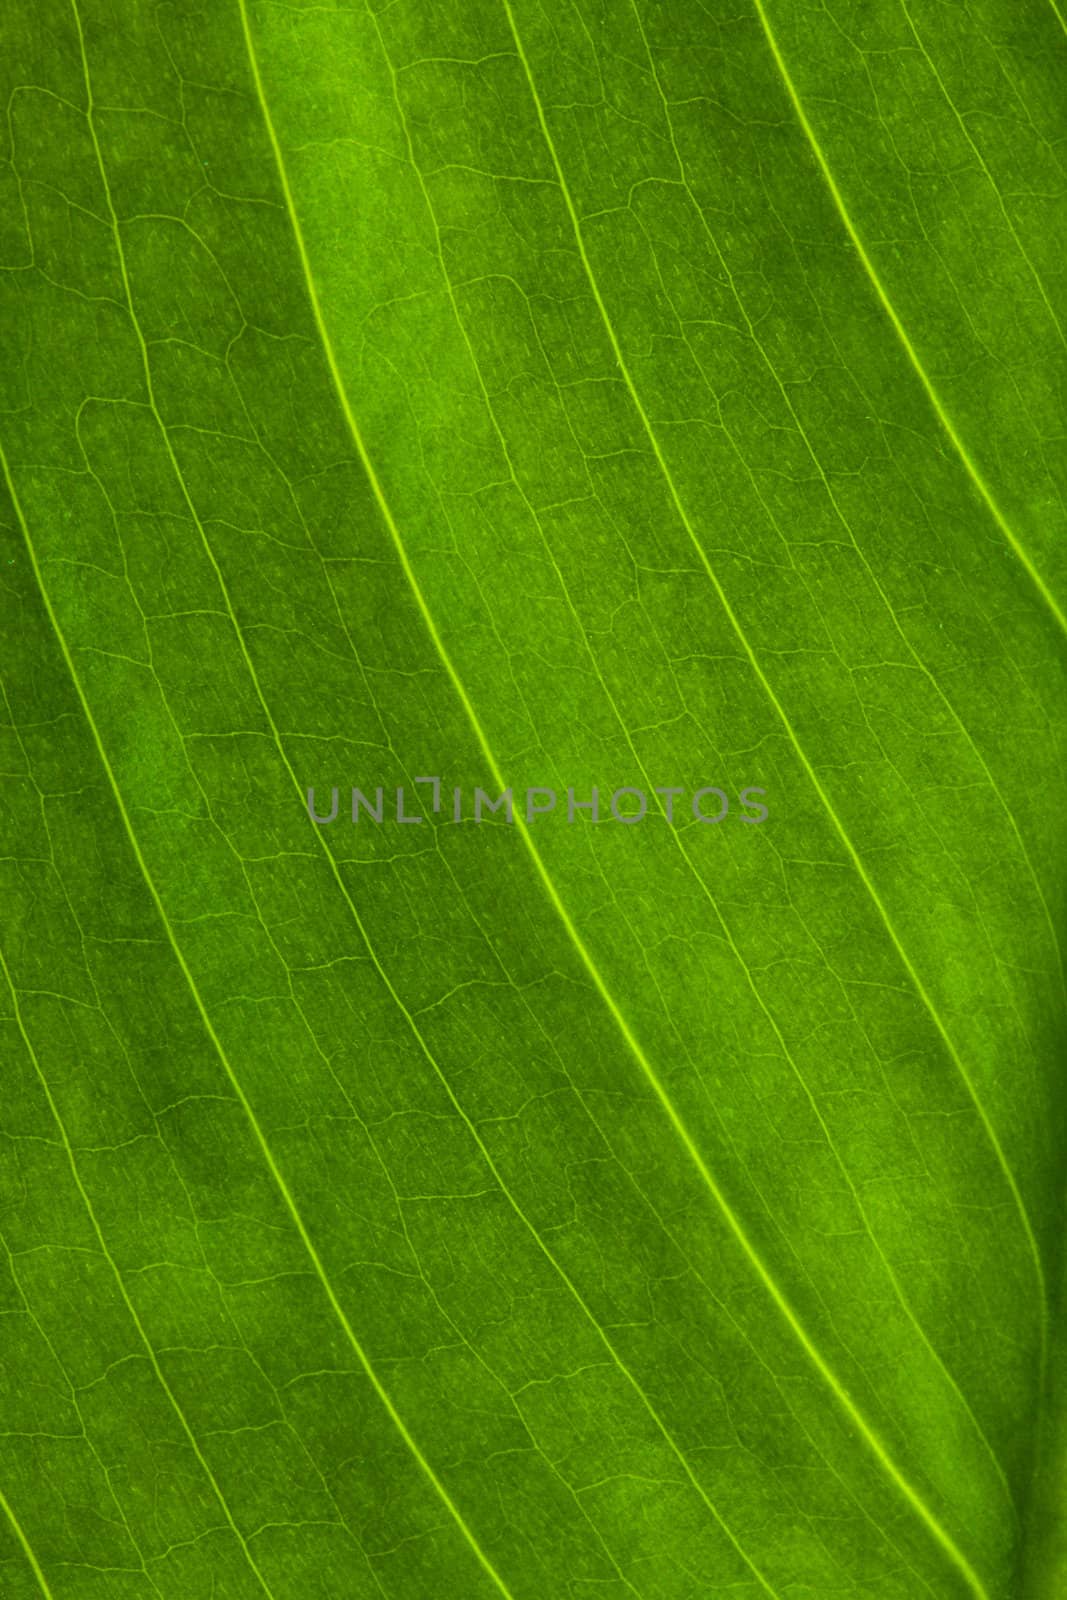 green leaf, macro shot